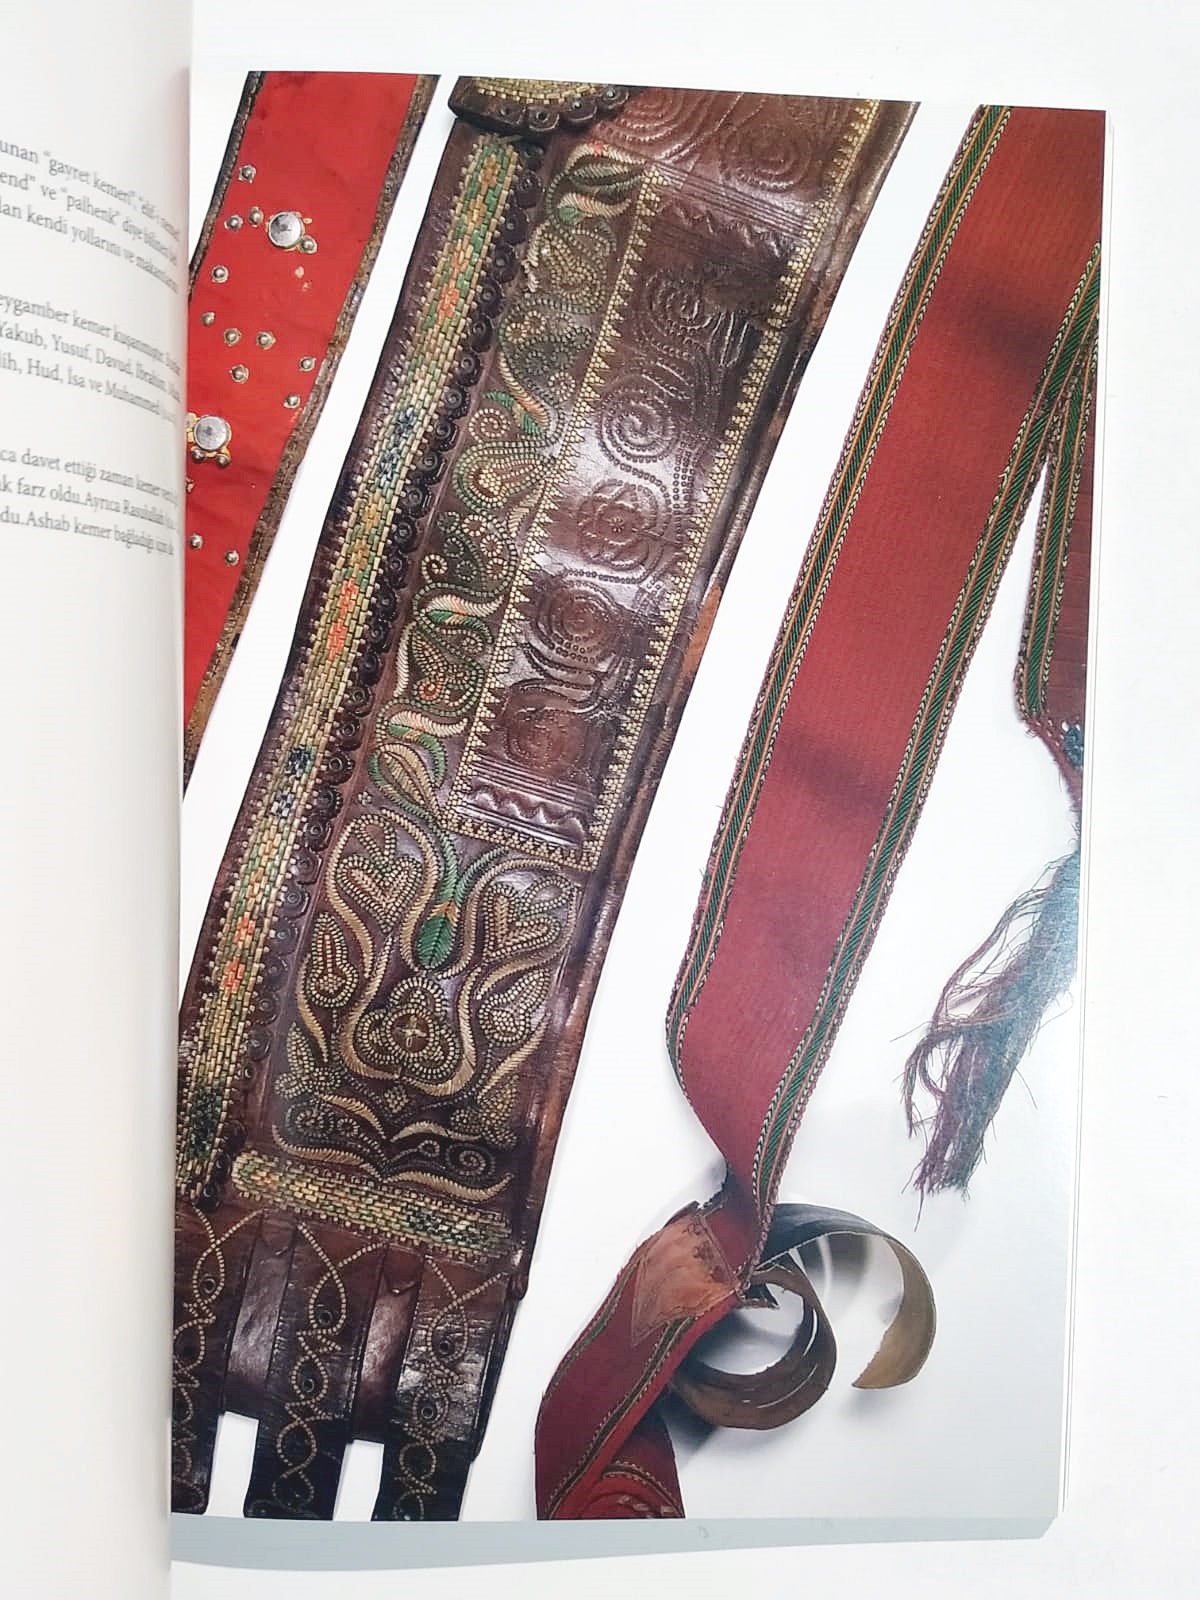 Sufi Objeler Halk resimleri ve günümüz çağdaş sanat eserleri - Kitap